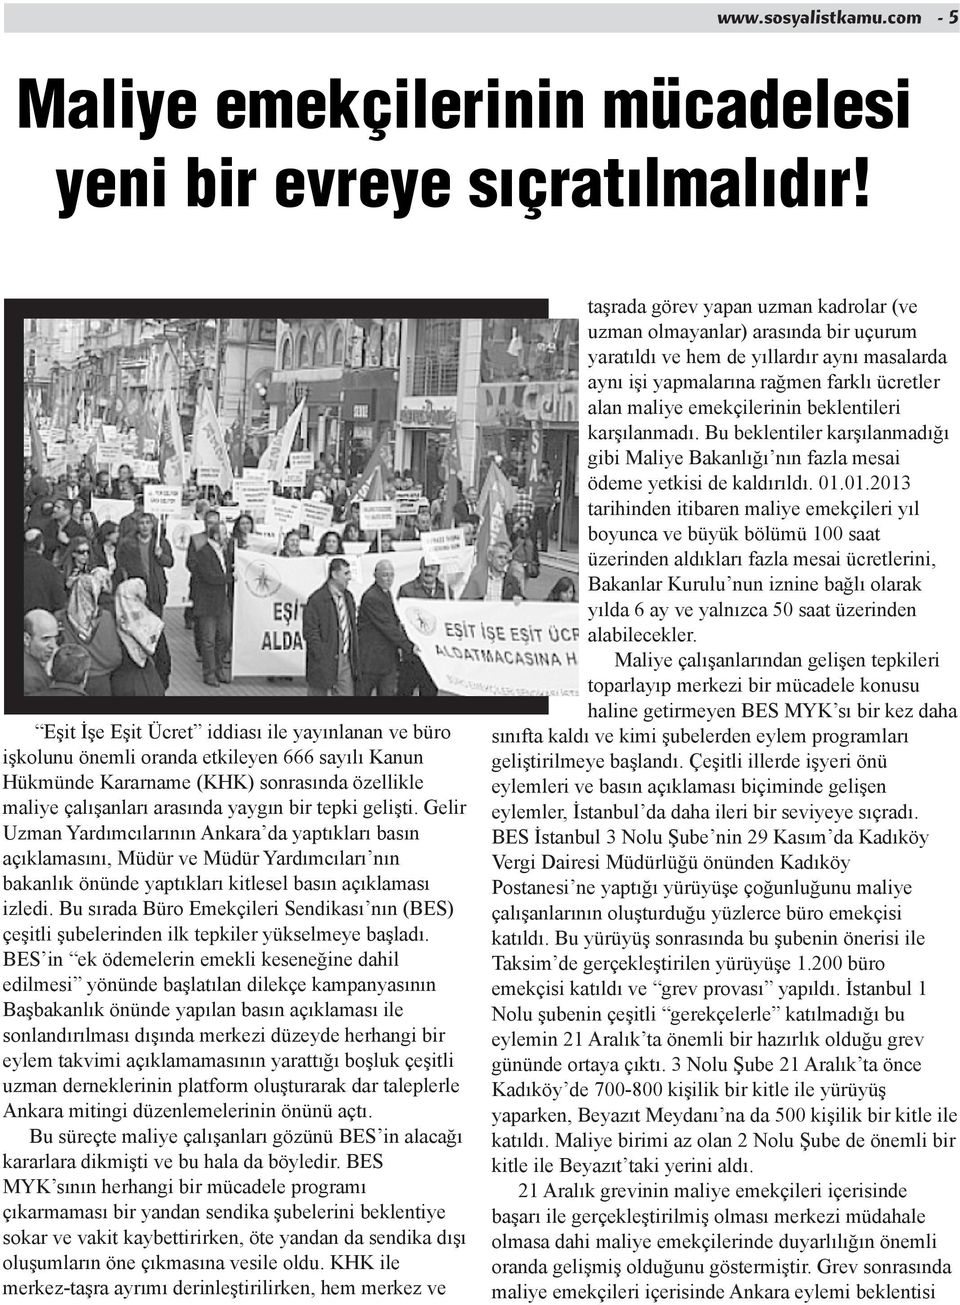 Gelir Uzman Yardımcılarının Ankara da yaptıkları basın açıklamasını, Müdür ve Müdür Yardımcıları nın bakanlık önünde yaptıkları kitlesel basın açıklaması izledi.